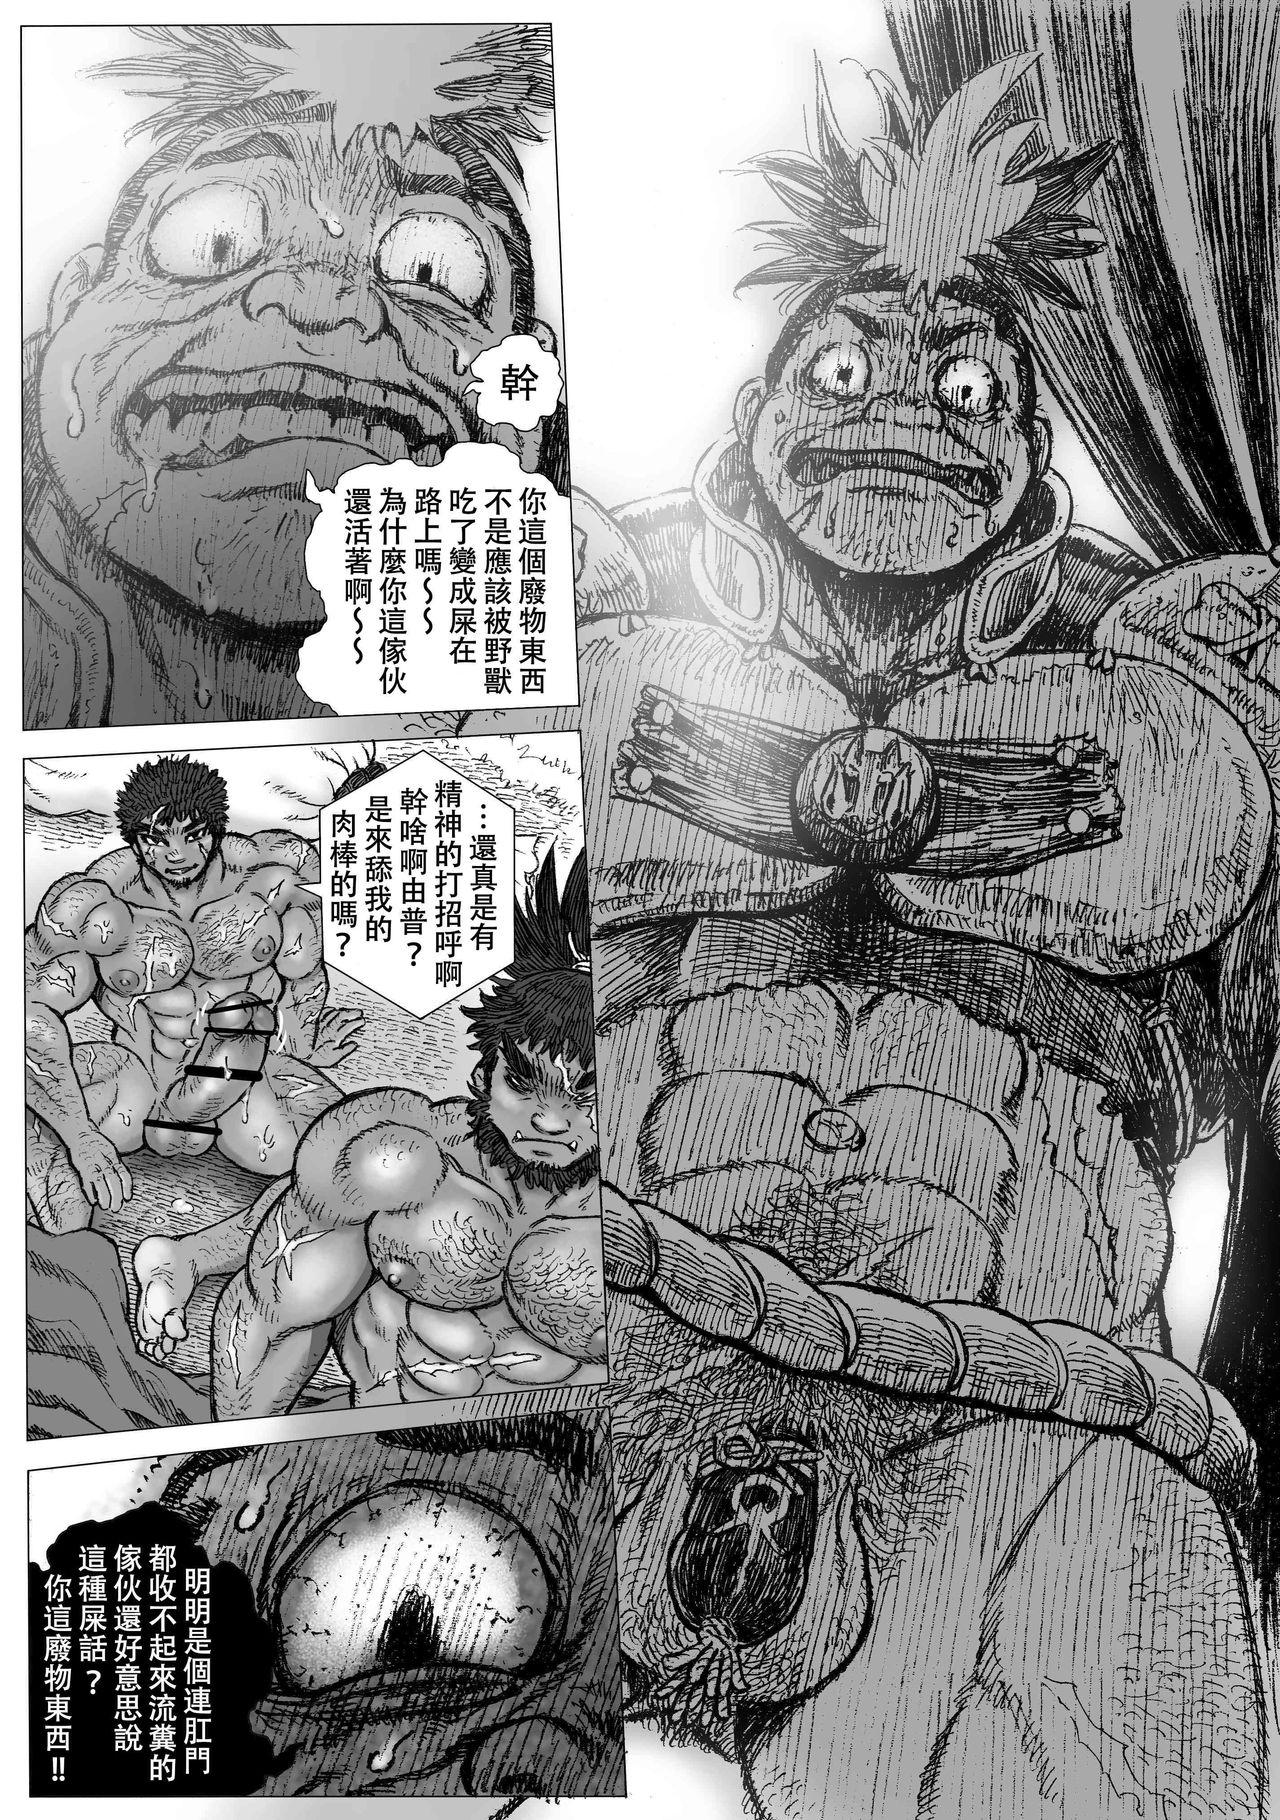 Ink Hepoe no Kuni kara 16 - Original Big Ass - Page 4